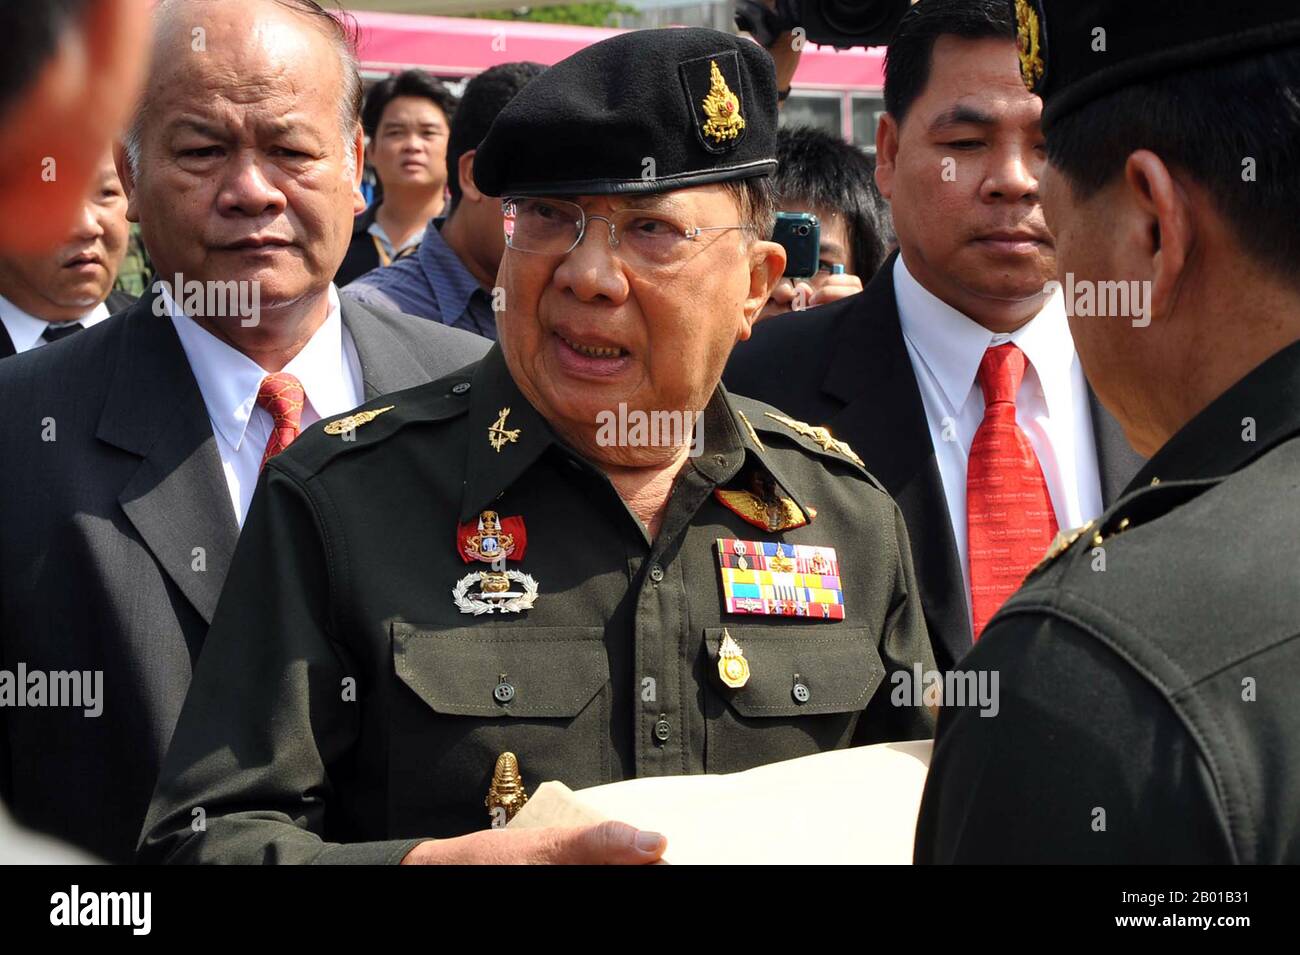 Thailand: General Chavalit Yongchaiyudh (1932 -), Premierminister von Thailand (r. 1996-1997). Foto von Peerapat Wimonrangcarat/Govt. Von Thailand, 2010. General Chavalit Yongchaiyudh, auch bekannt als ''Big Jiew'', ist ein thailändischer Politiker und pensionierter General. Von 1996 bis 1997 war er Thailands Premierminister von 22.. Er ist chinesisch-thailändischer und laotischer Herkunft. Chavalit begann seine politische Karriere 1988 in der Verwaltung von Chatichai Choonhavan. Seine New Aspiration Party gewann die meisten Sitze bei den Wahlen 1996 und er wurde Premierminister, aber die asiatische Finanzkrise von 1997 zwang ihn zum Rücktritt. Stockfoto